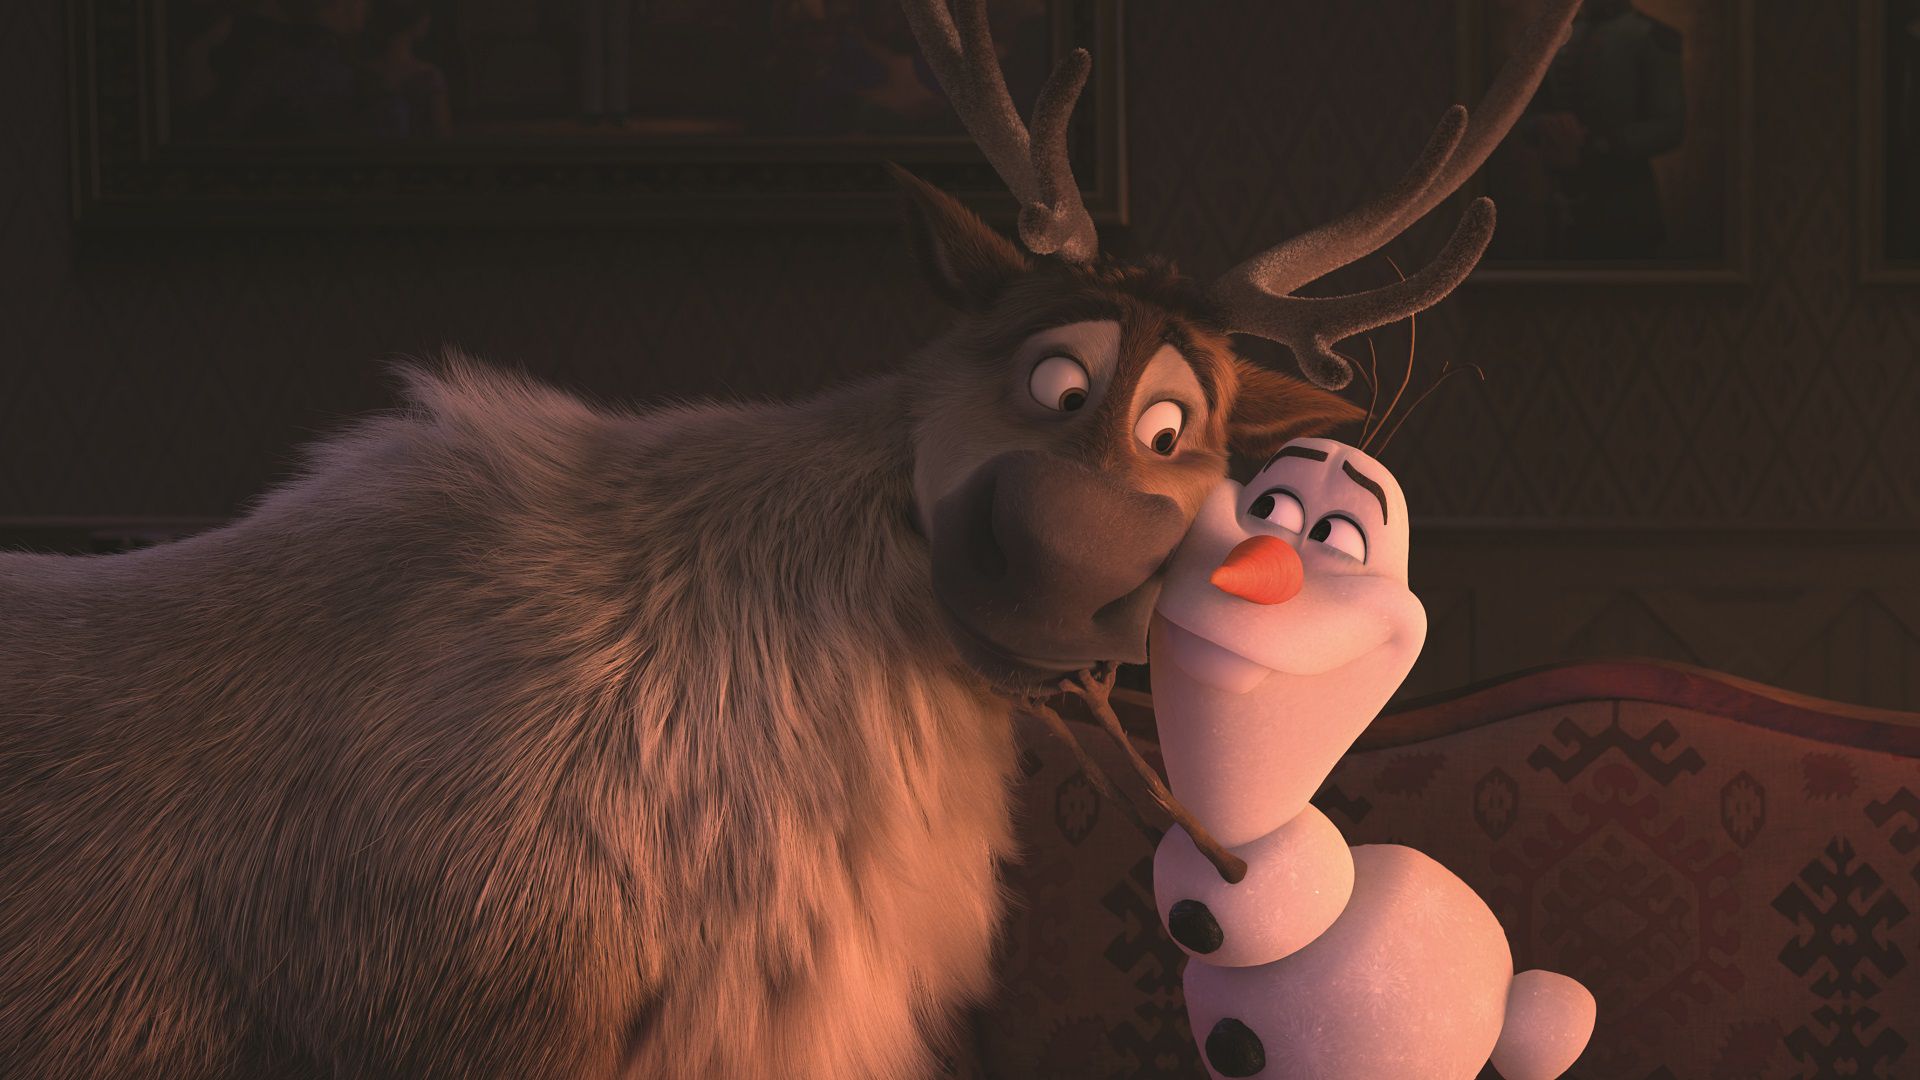 La Storia di Olaf